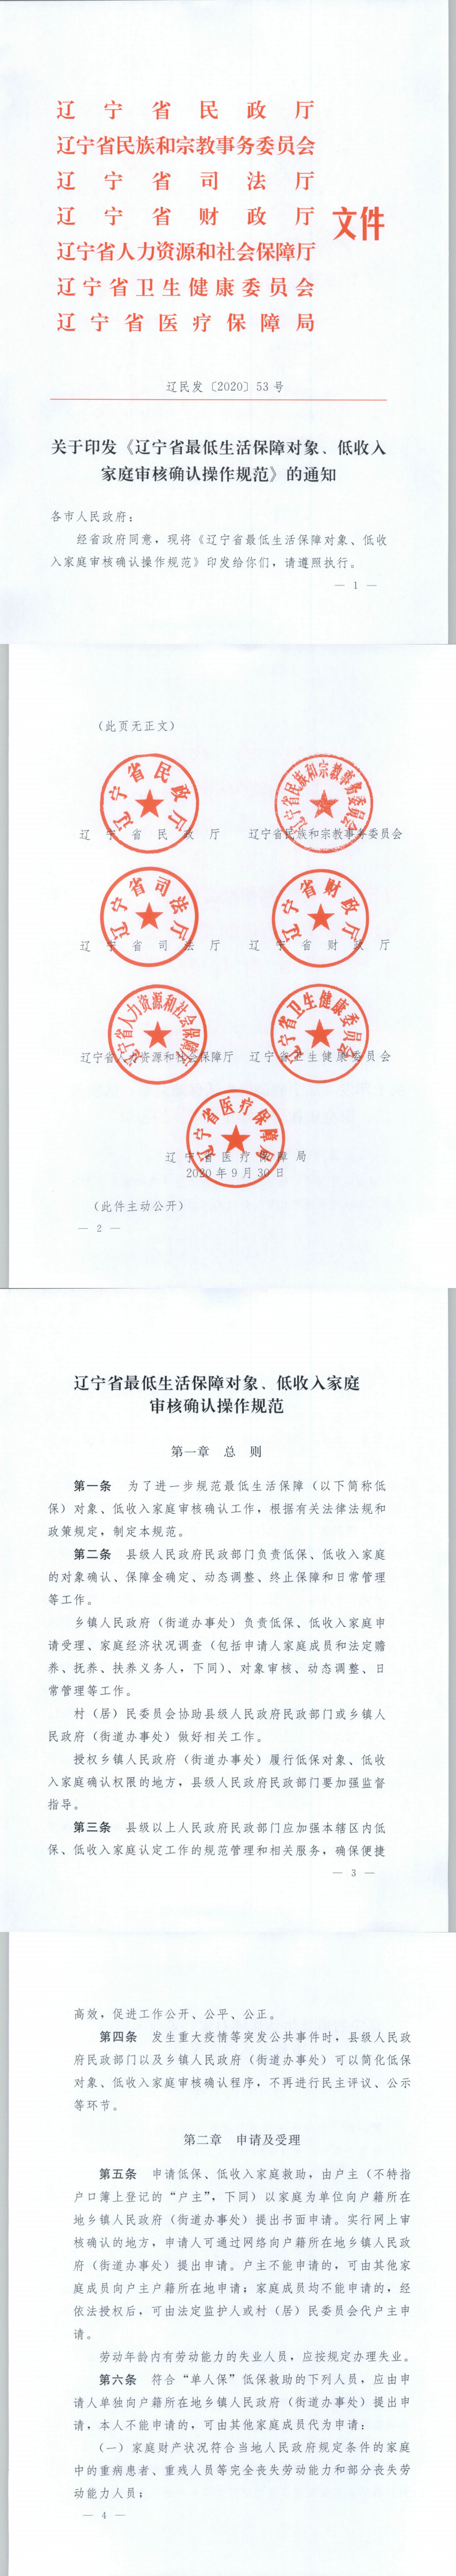 《辽宁省最低生活保障对象、低收入家庭审核确认操作规范》的通知1.png